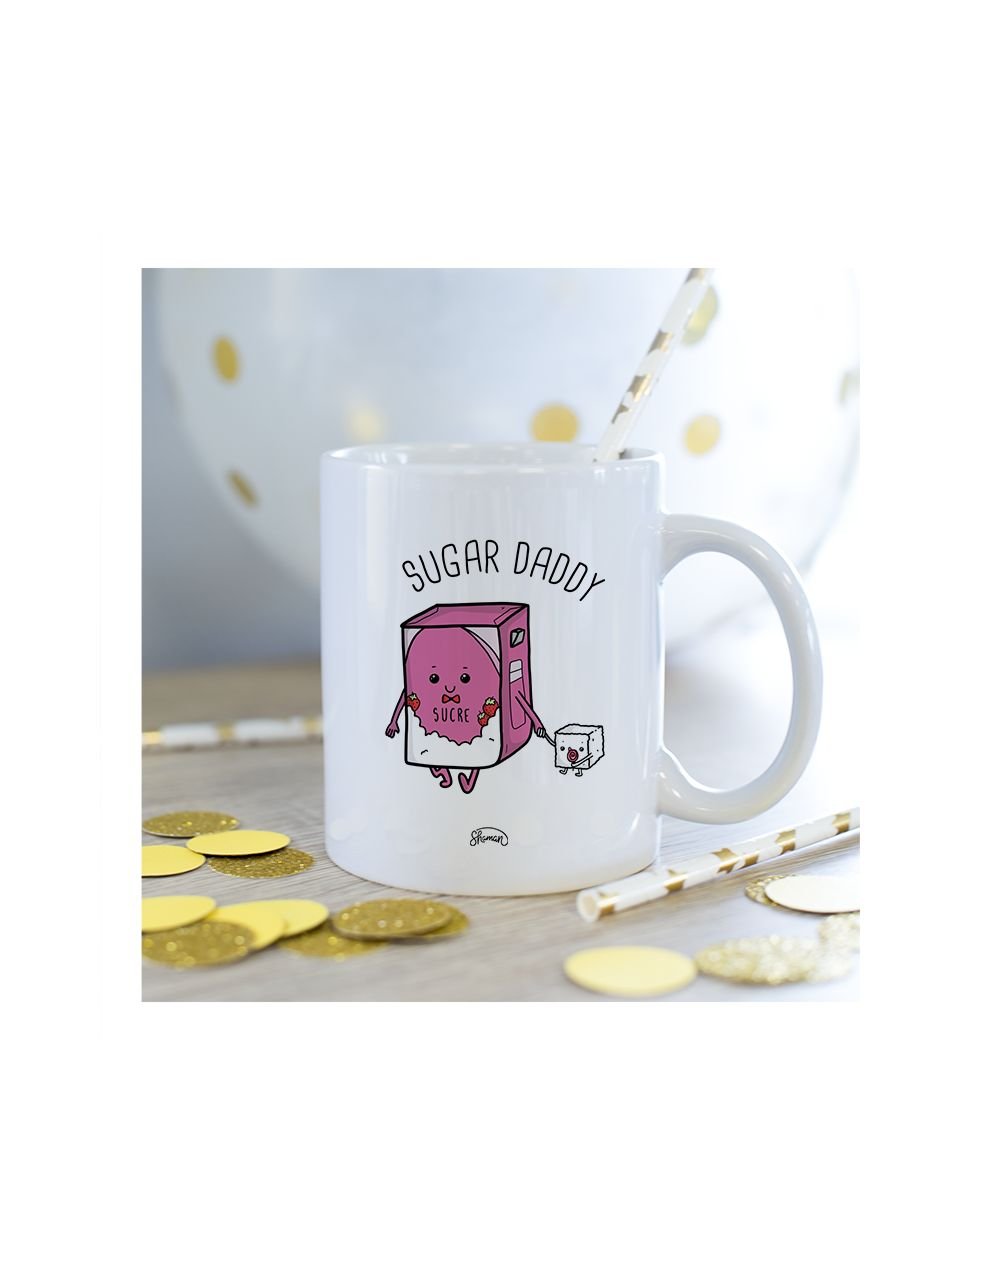 Mug "Sugar daddy"